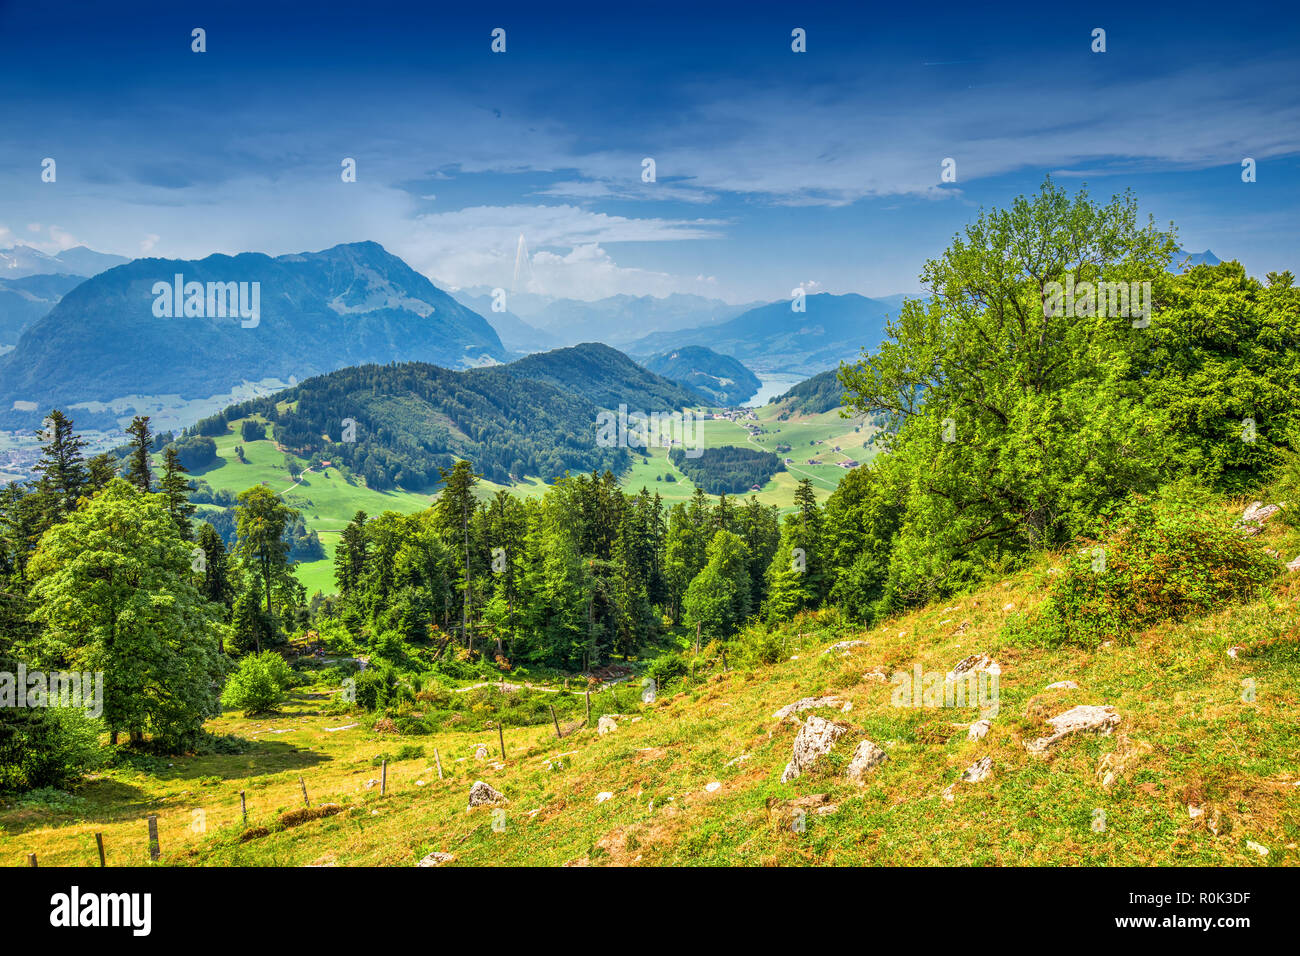 Alpes Suisses près de Burgenstock avec l'avis de Floralpina et Pilatus mountain, Suisse, Europe Banque D'Images